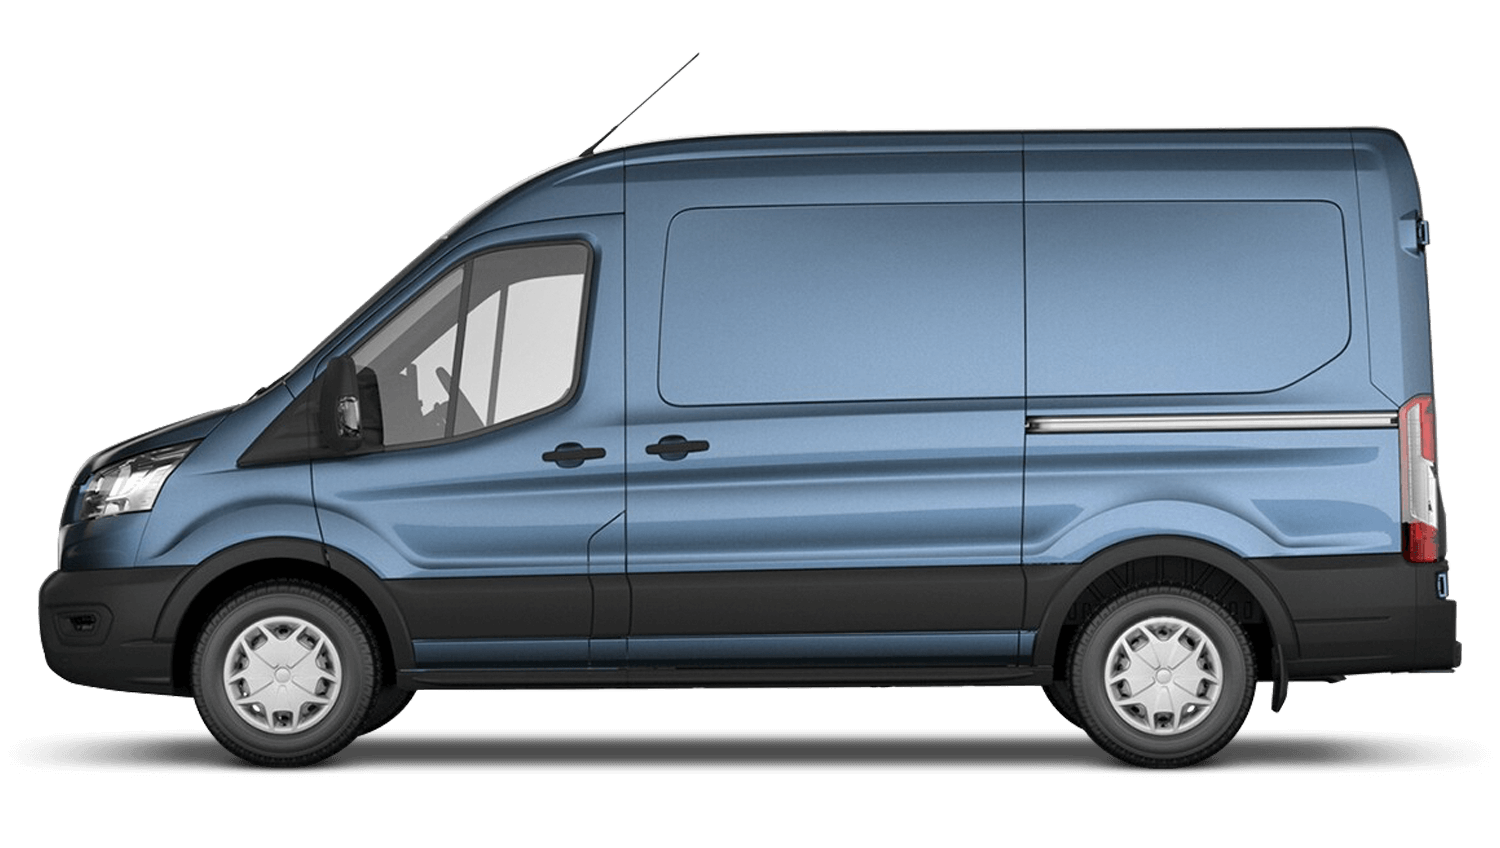 pre registered vans for sale uk